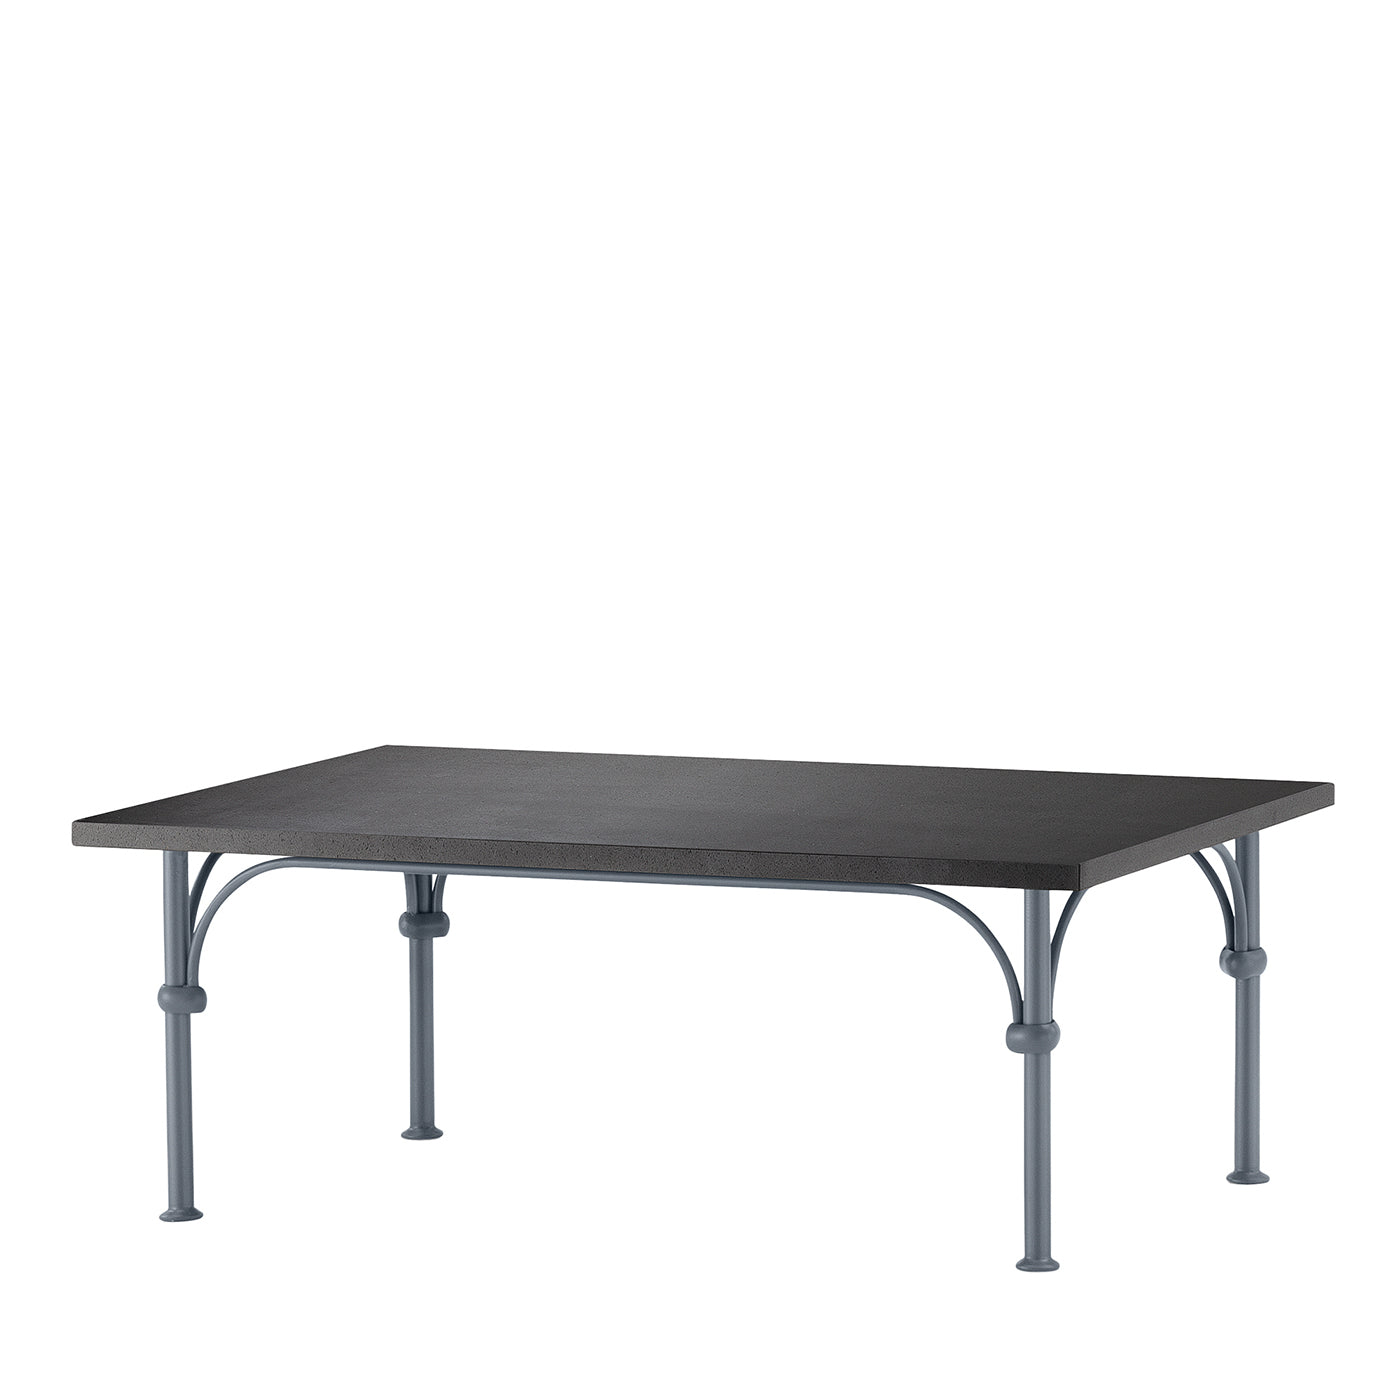 Tavolario Table basse rectangulaire en fer forgé gris - Vue principale